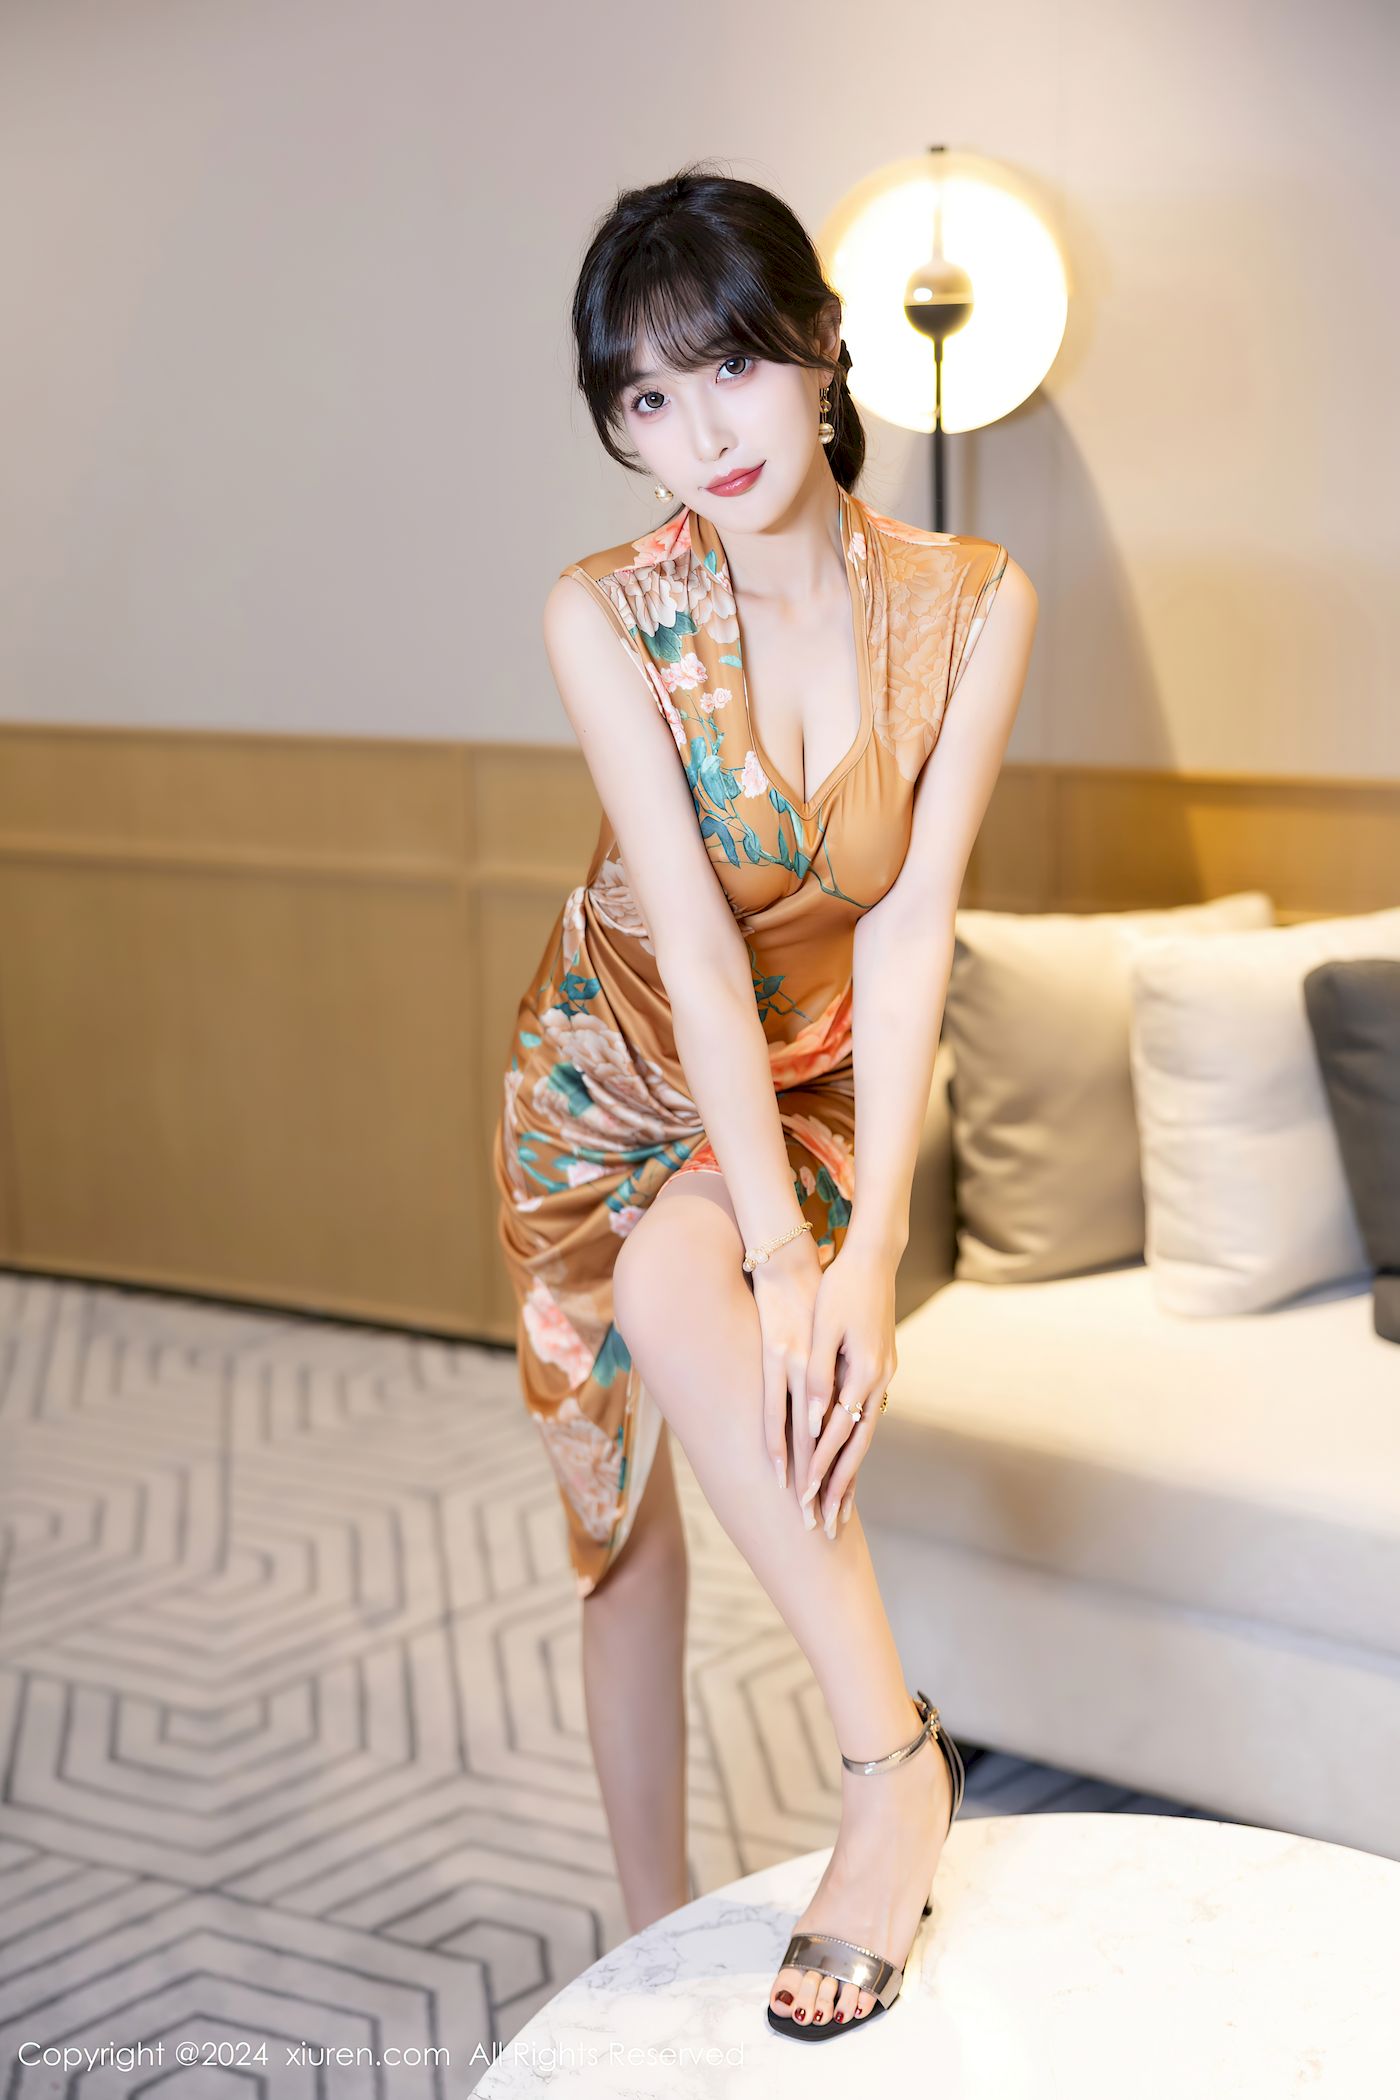 林星阑土黄带图案旗袍服饰清纯甜美性感写真